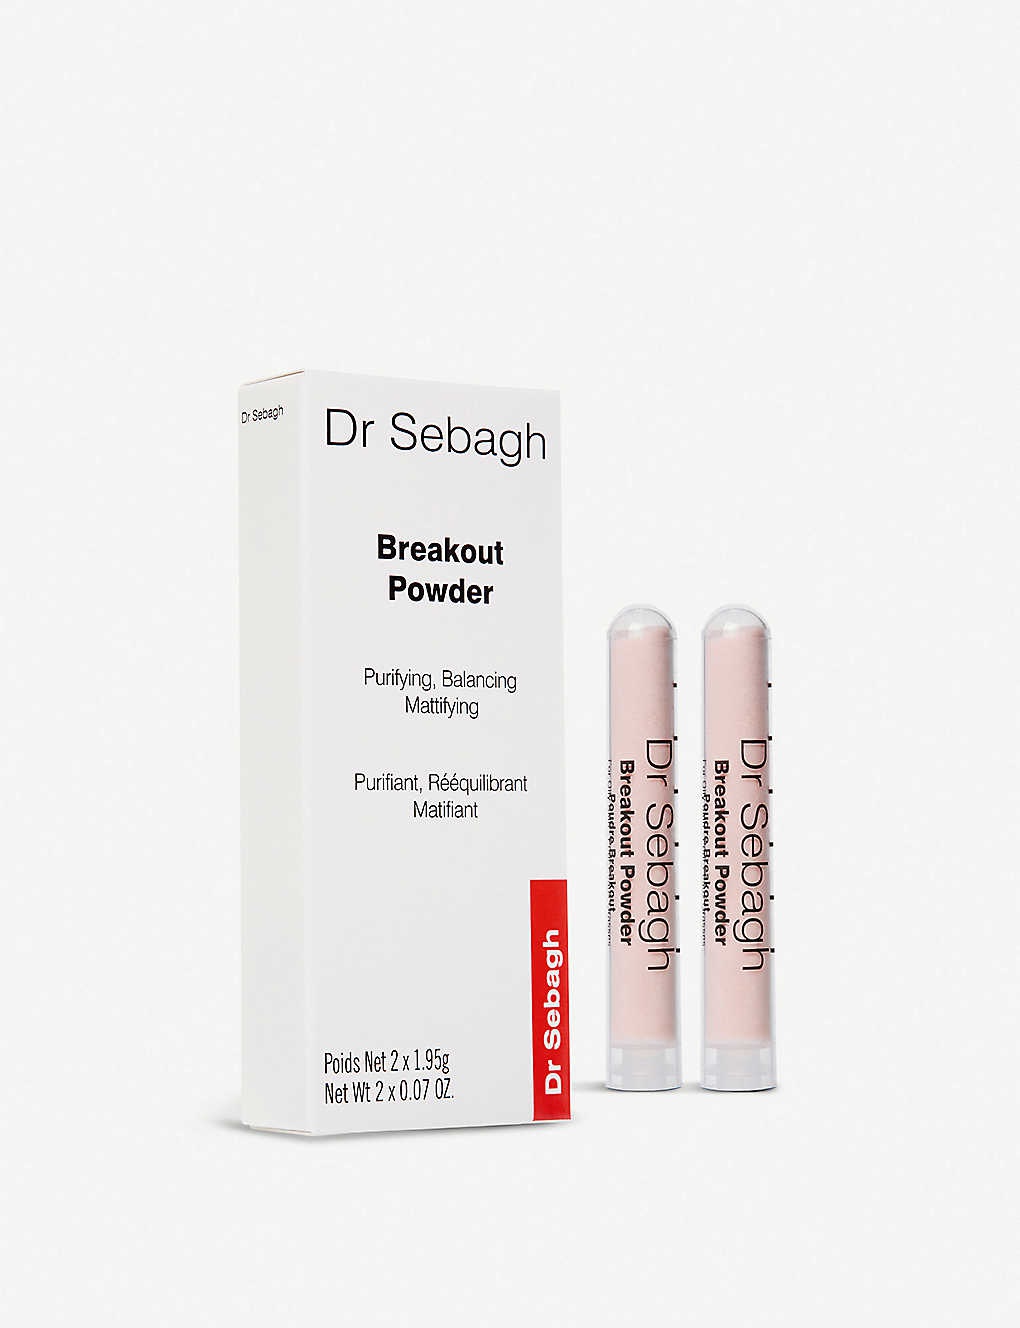 Dr Sebagh Breakout Powder